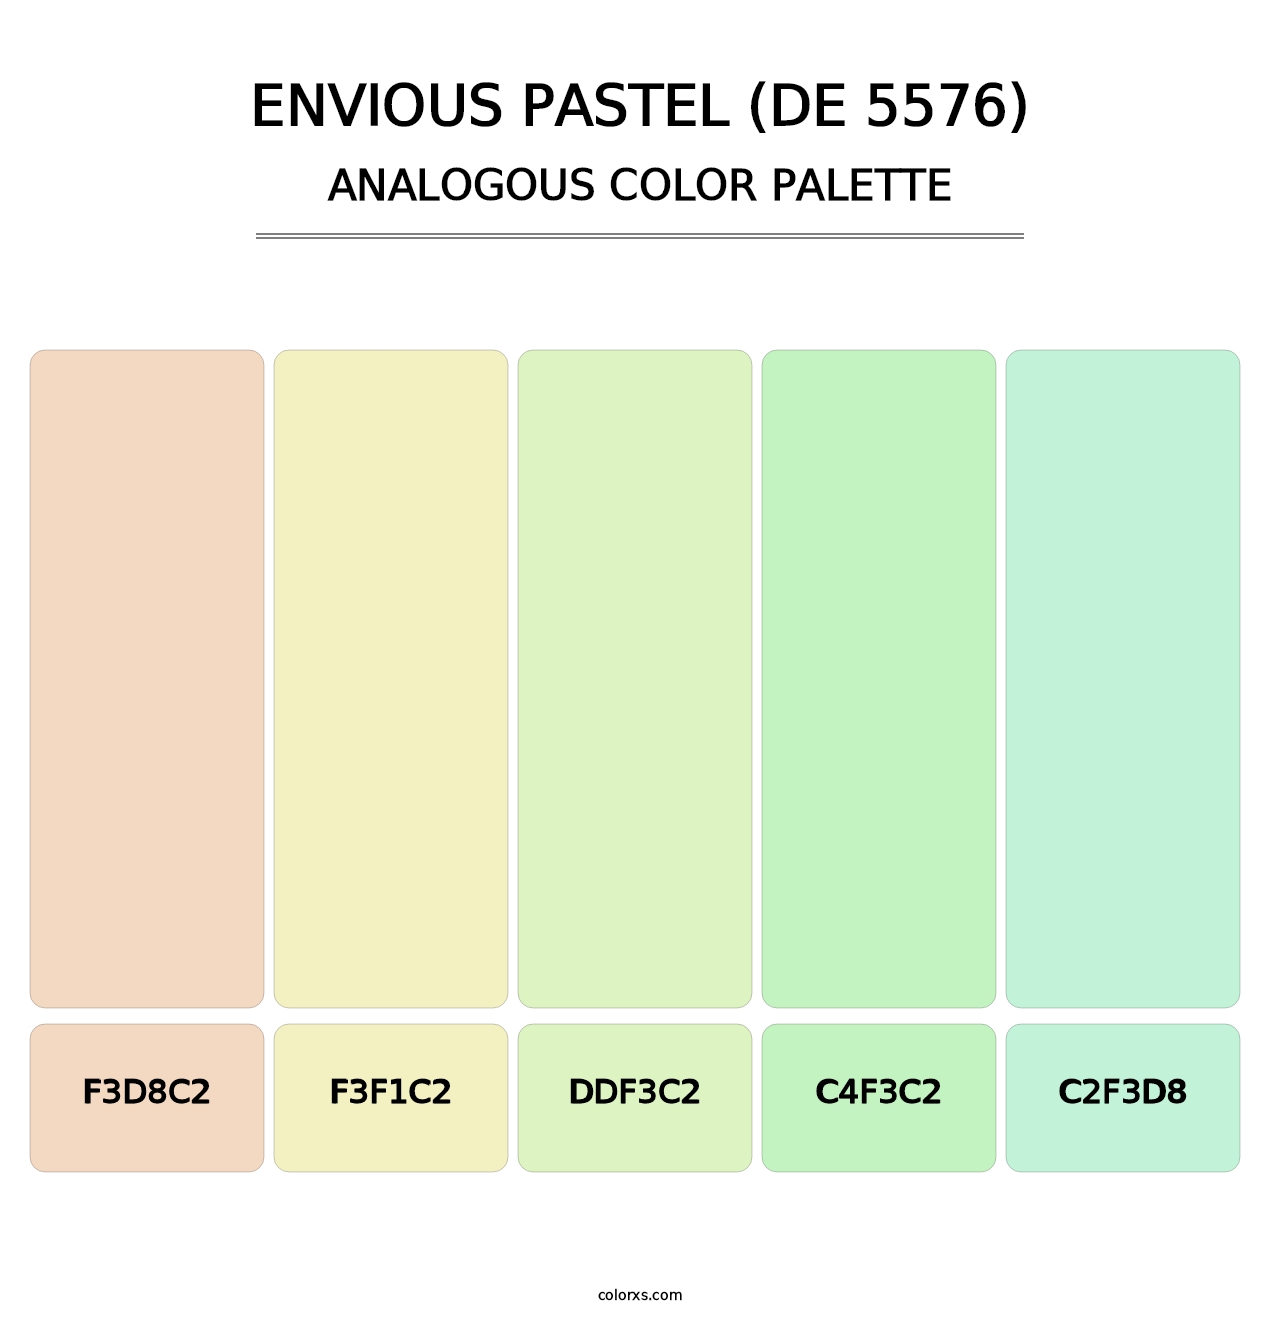 Envious Pastel (DE 5576) - Analogous Color Palette